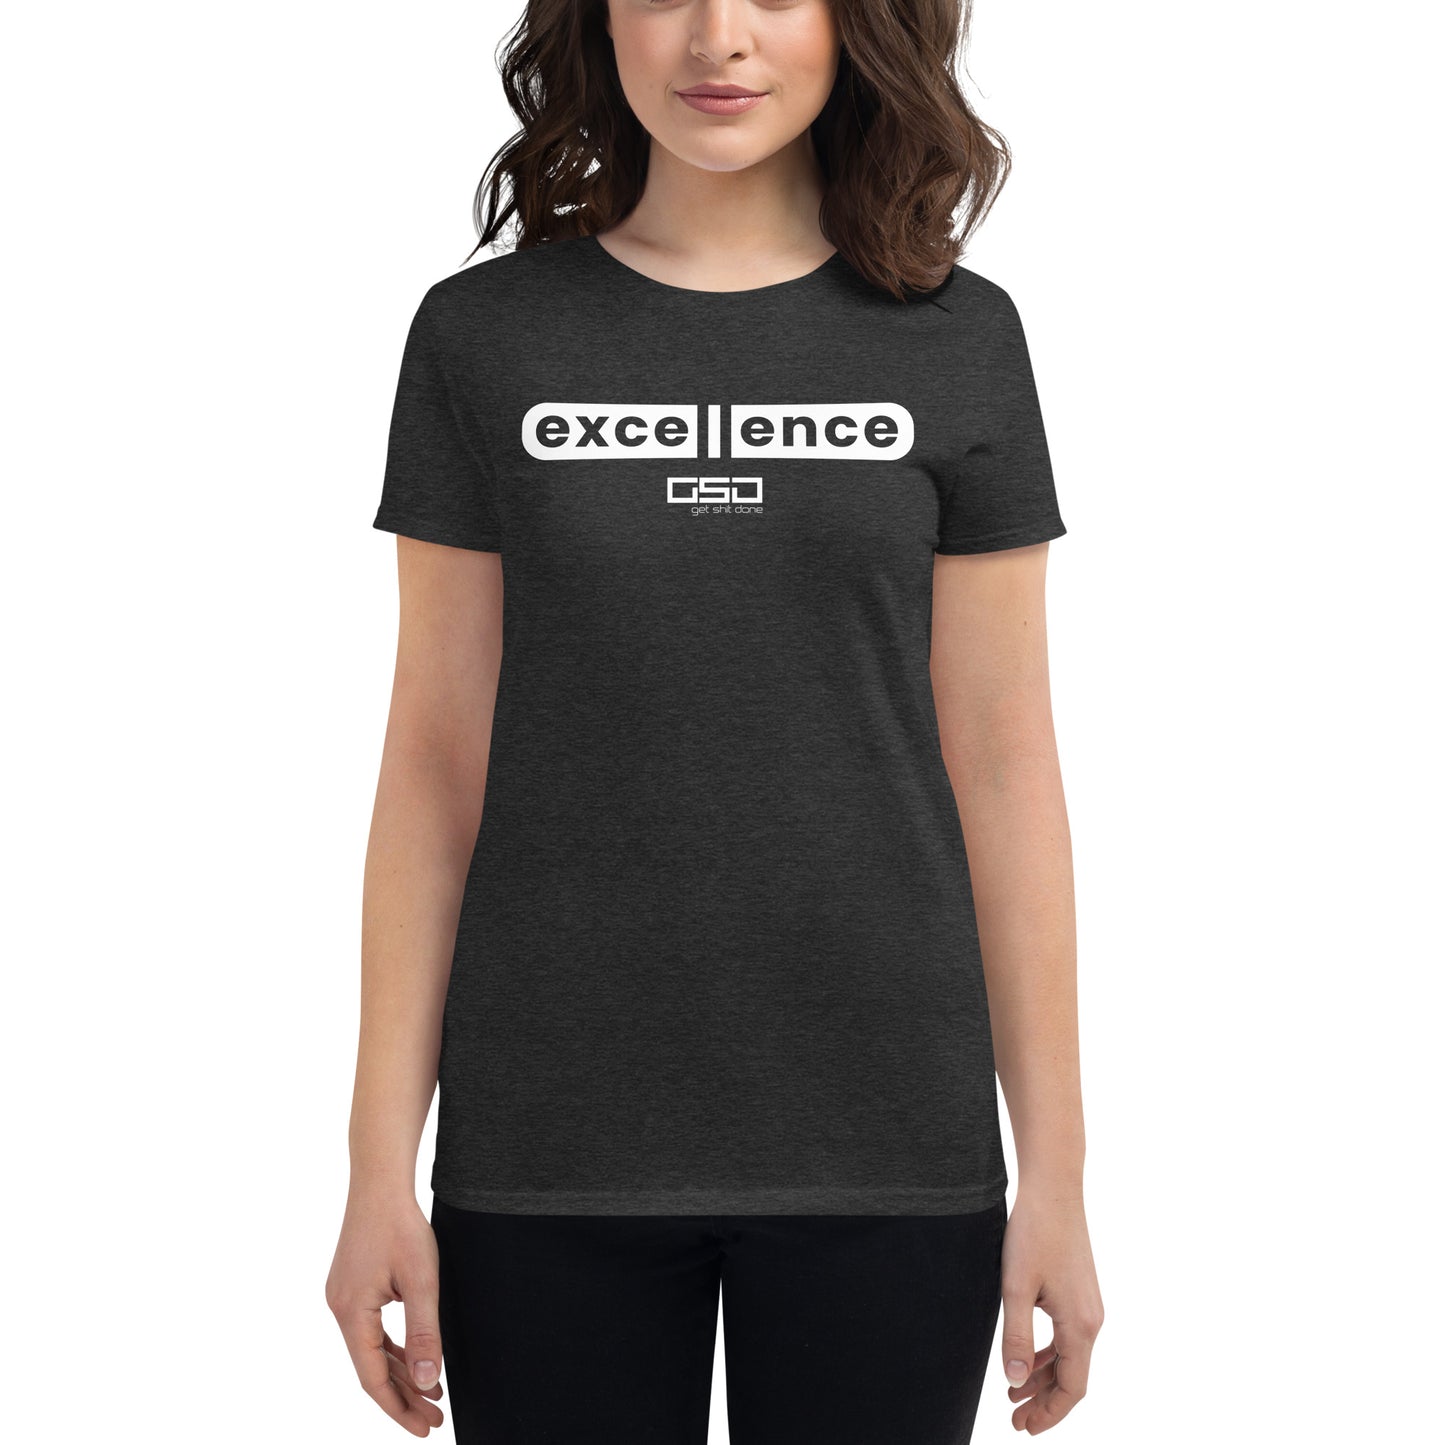 Excellence-Women's short sleeve t-shirt